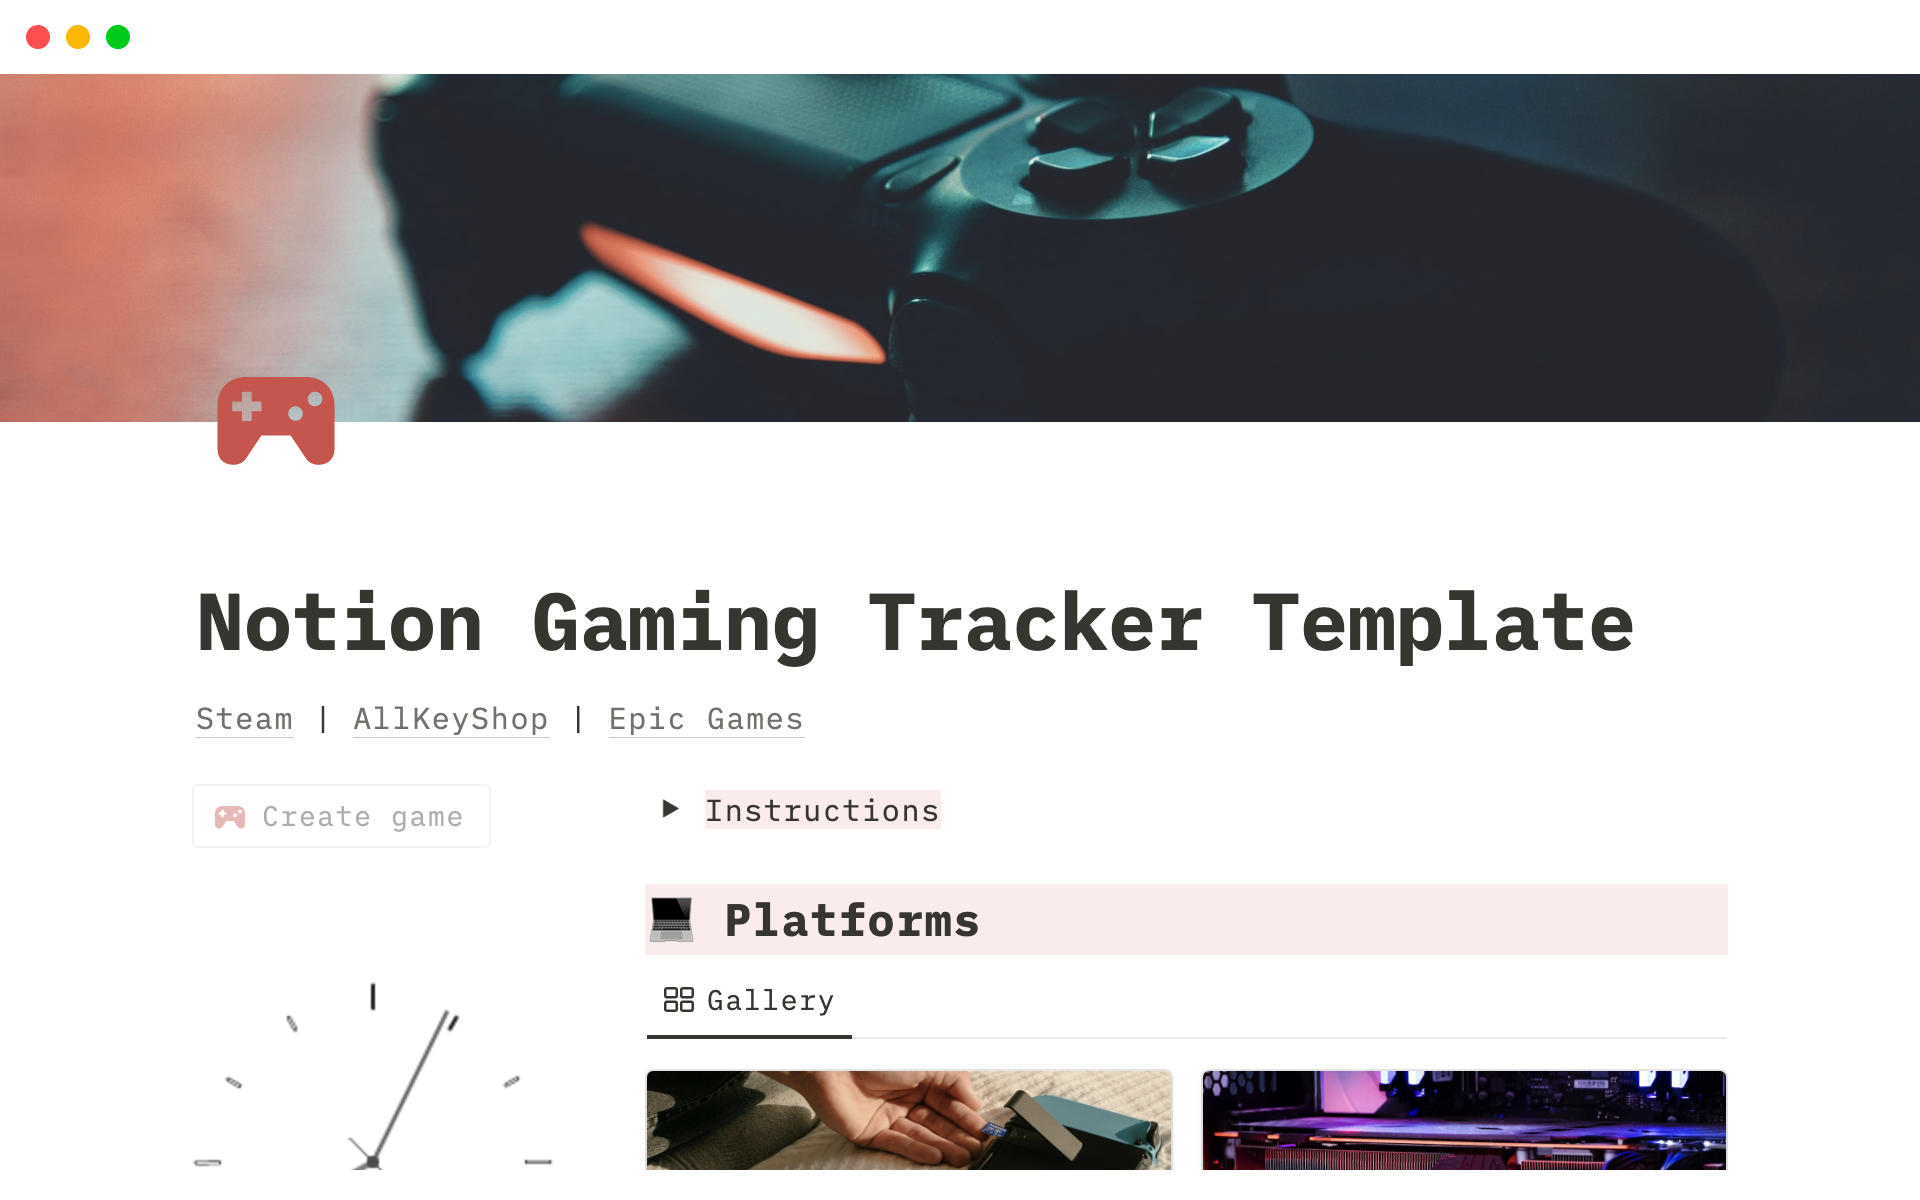 Vista previa de una plantilla para Notion Gaming Tracker Template